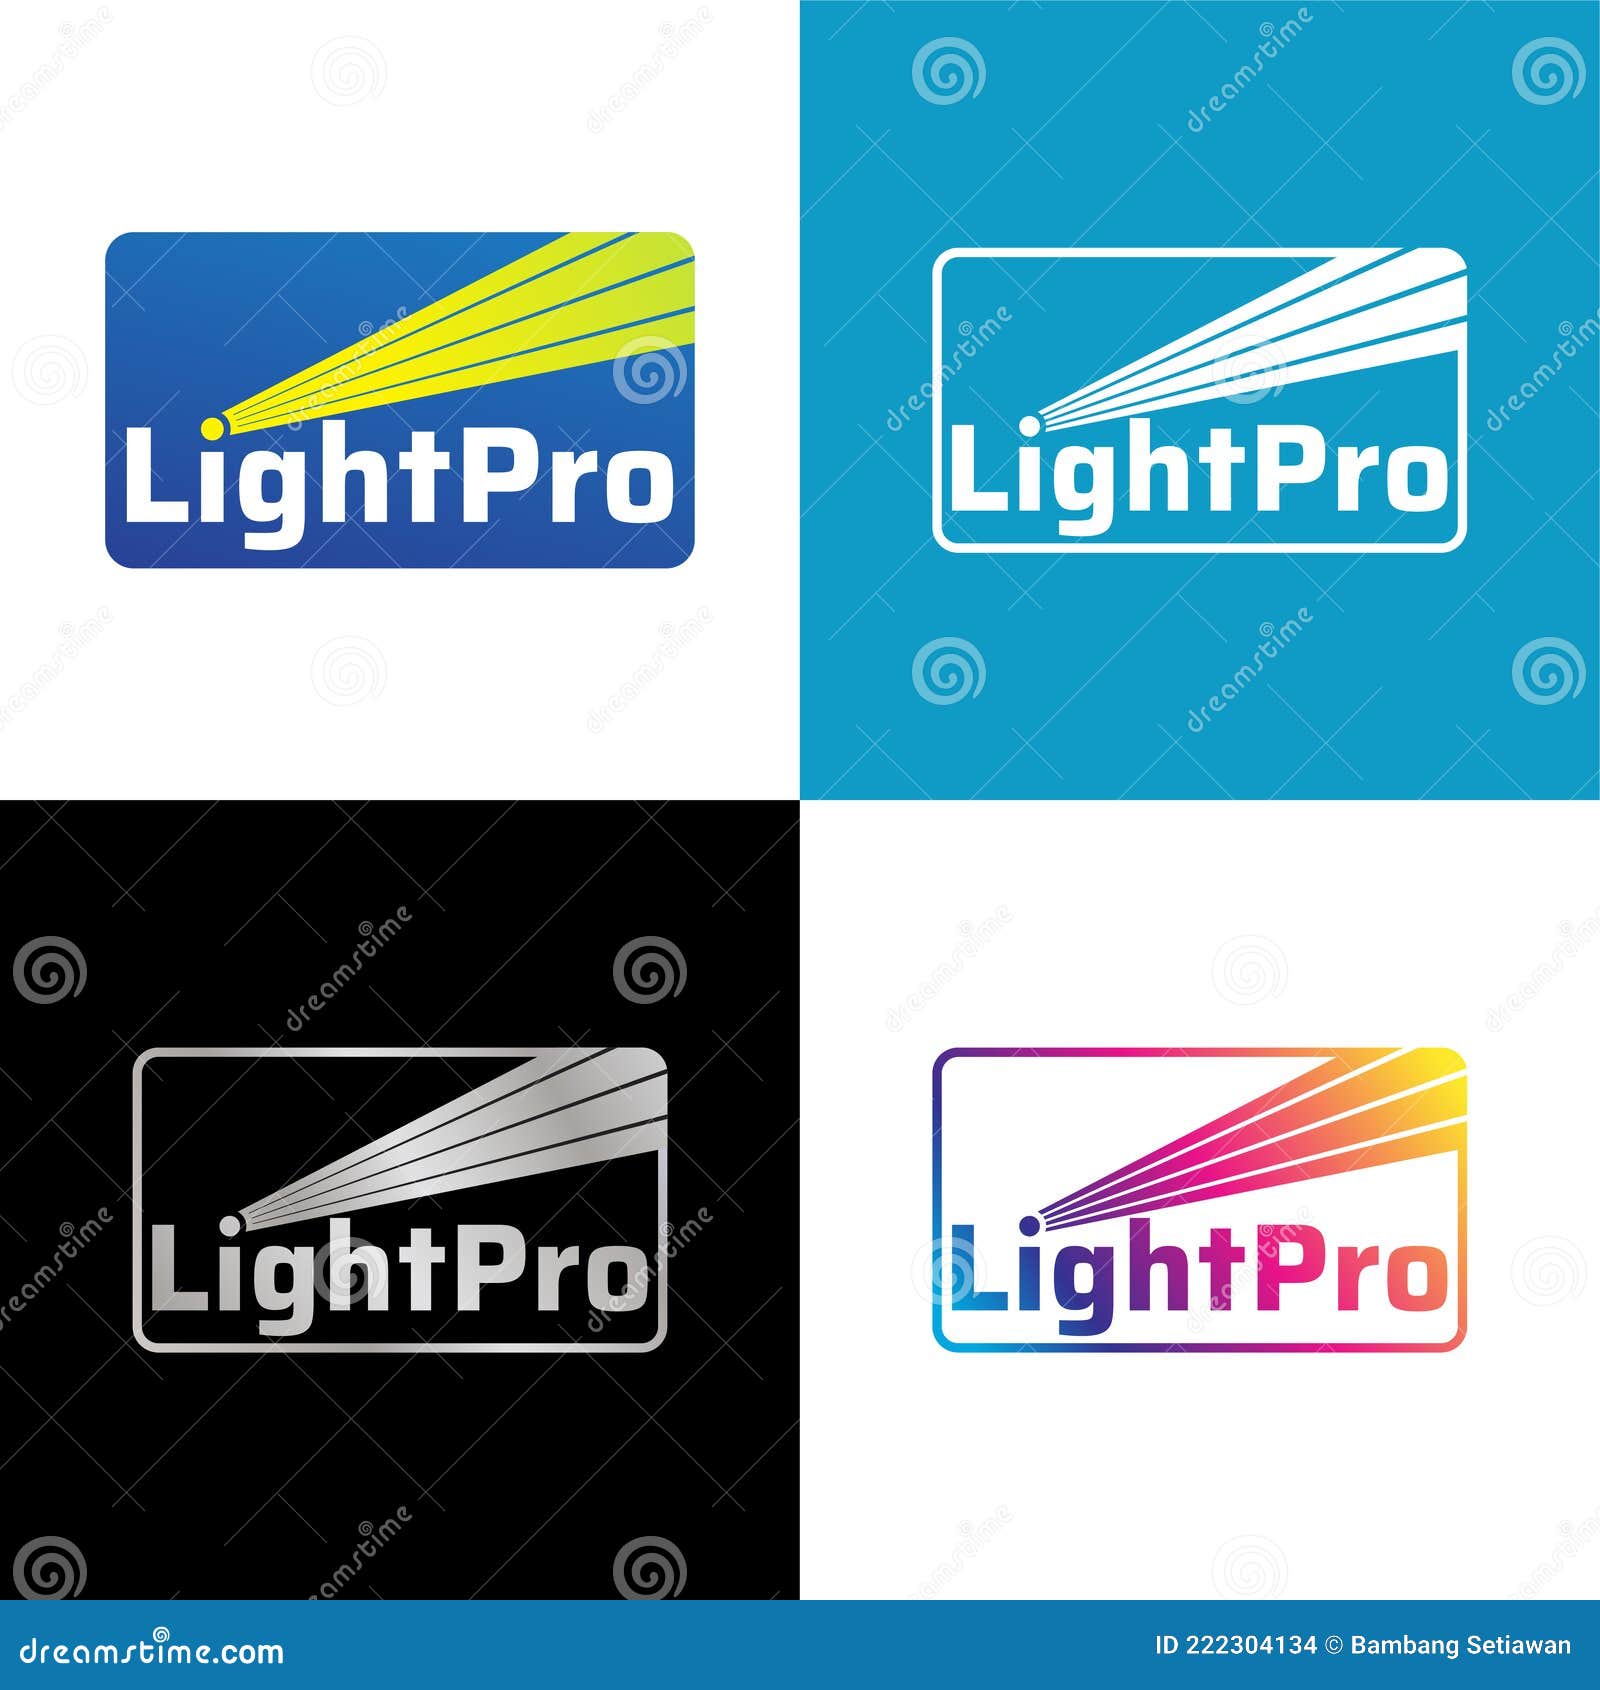 Light Logo png images | PNGEgg-vinhomehanoi.com.vn